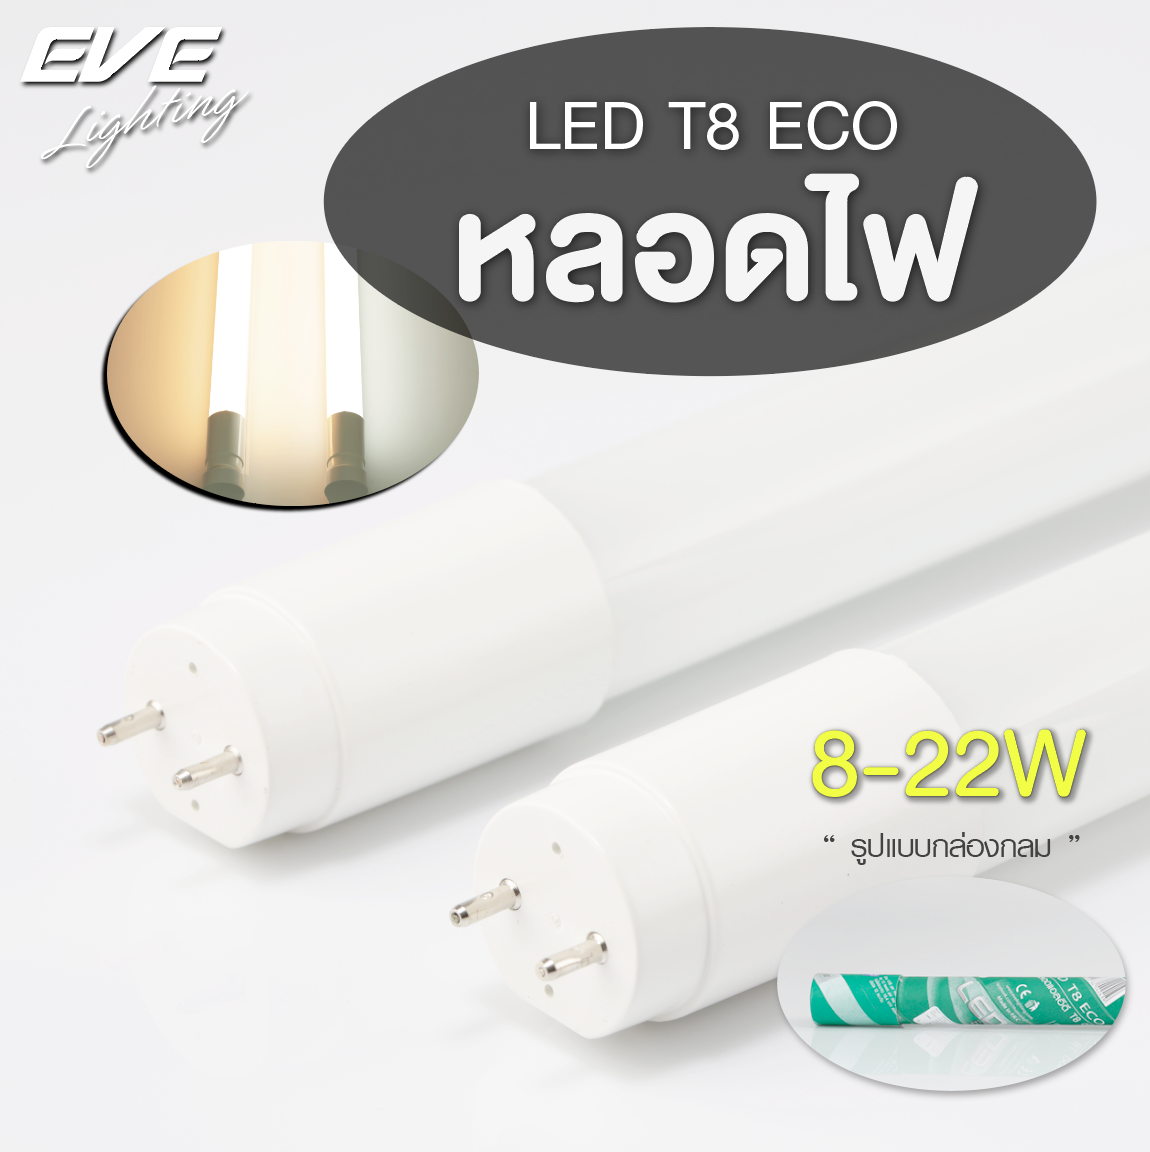 LED T8 ECO หลอดแอลอีดี T8 ชนิดไฟเข้าสองทาง ขนาด 8, 9, 16, 18, 22 วัตต์ แสงขาวเดย์ไลท์, วอร์มไวท์ และ คูลไวท์